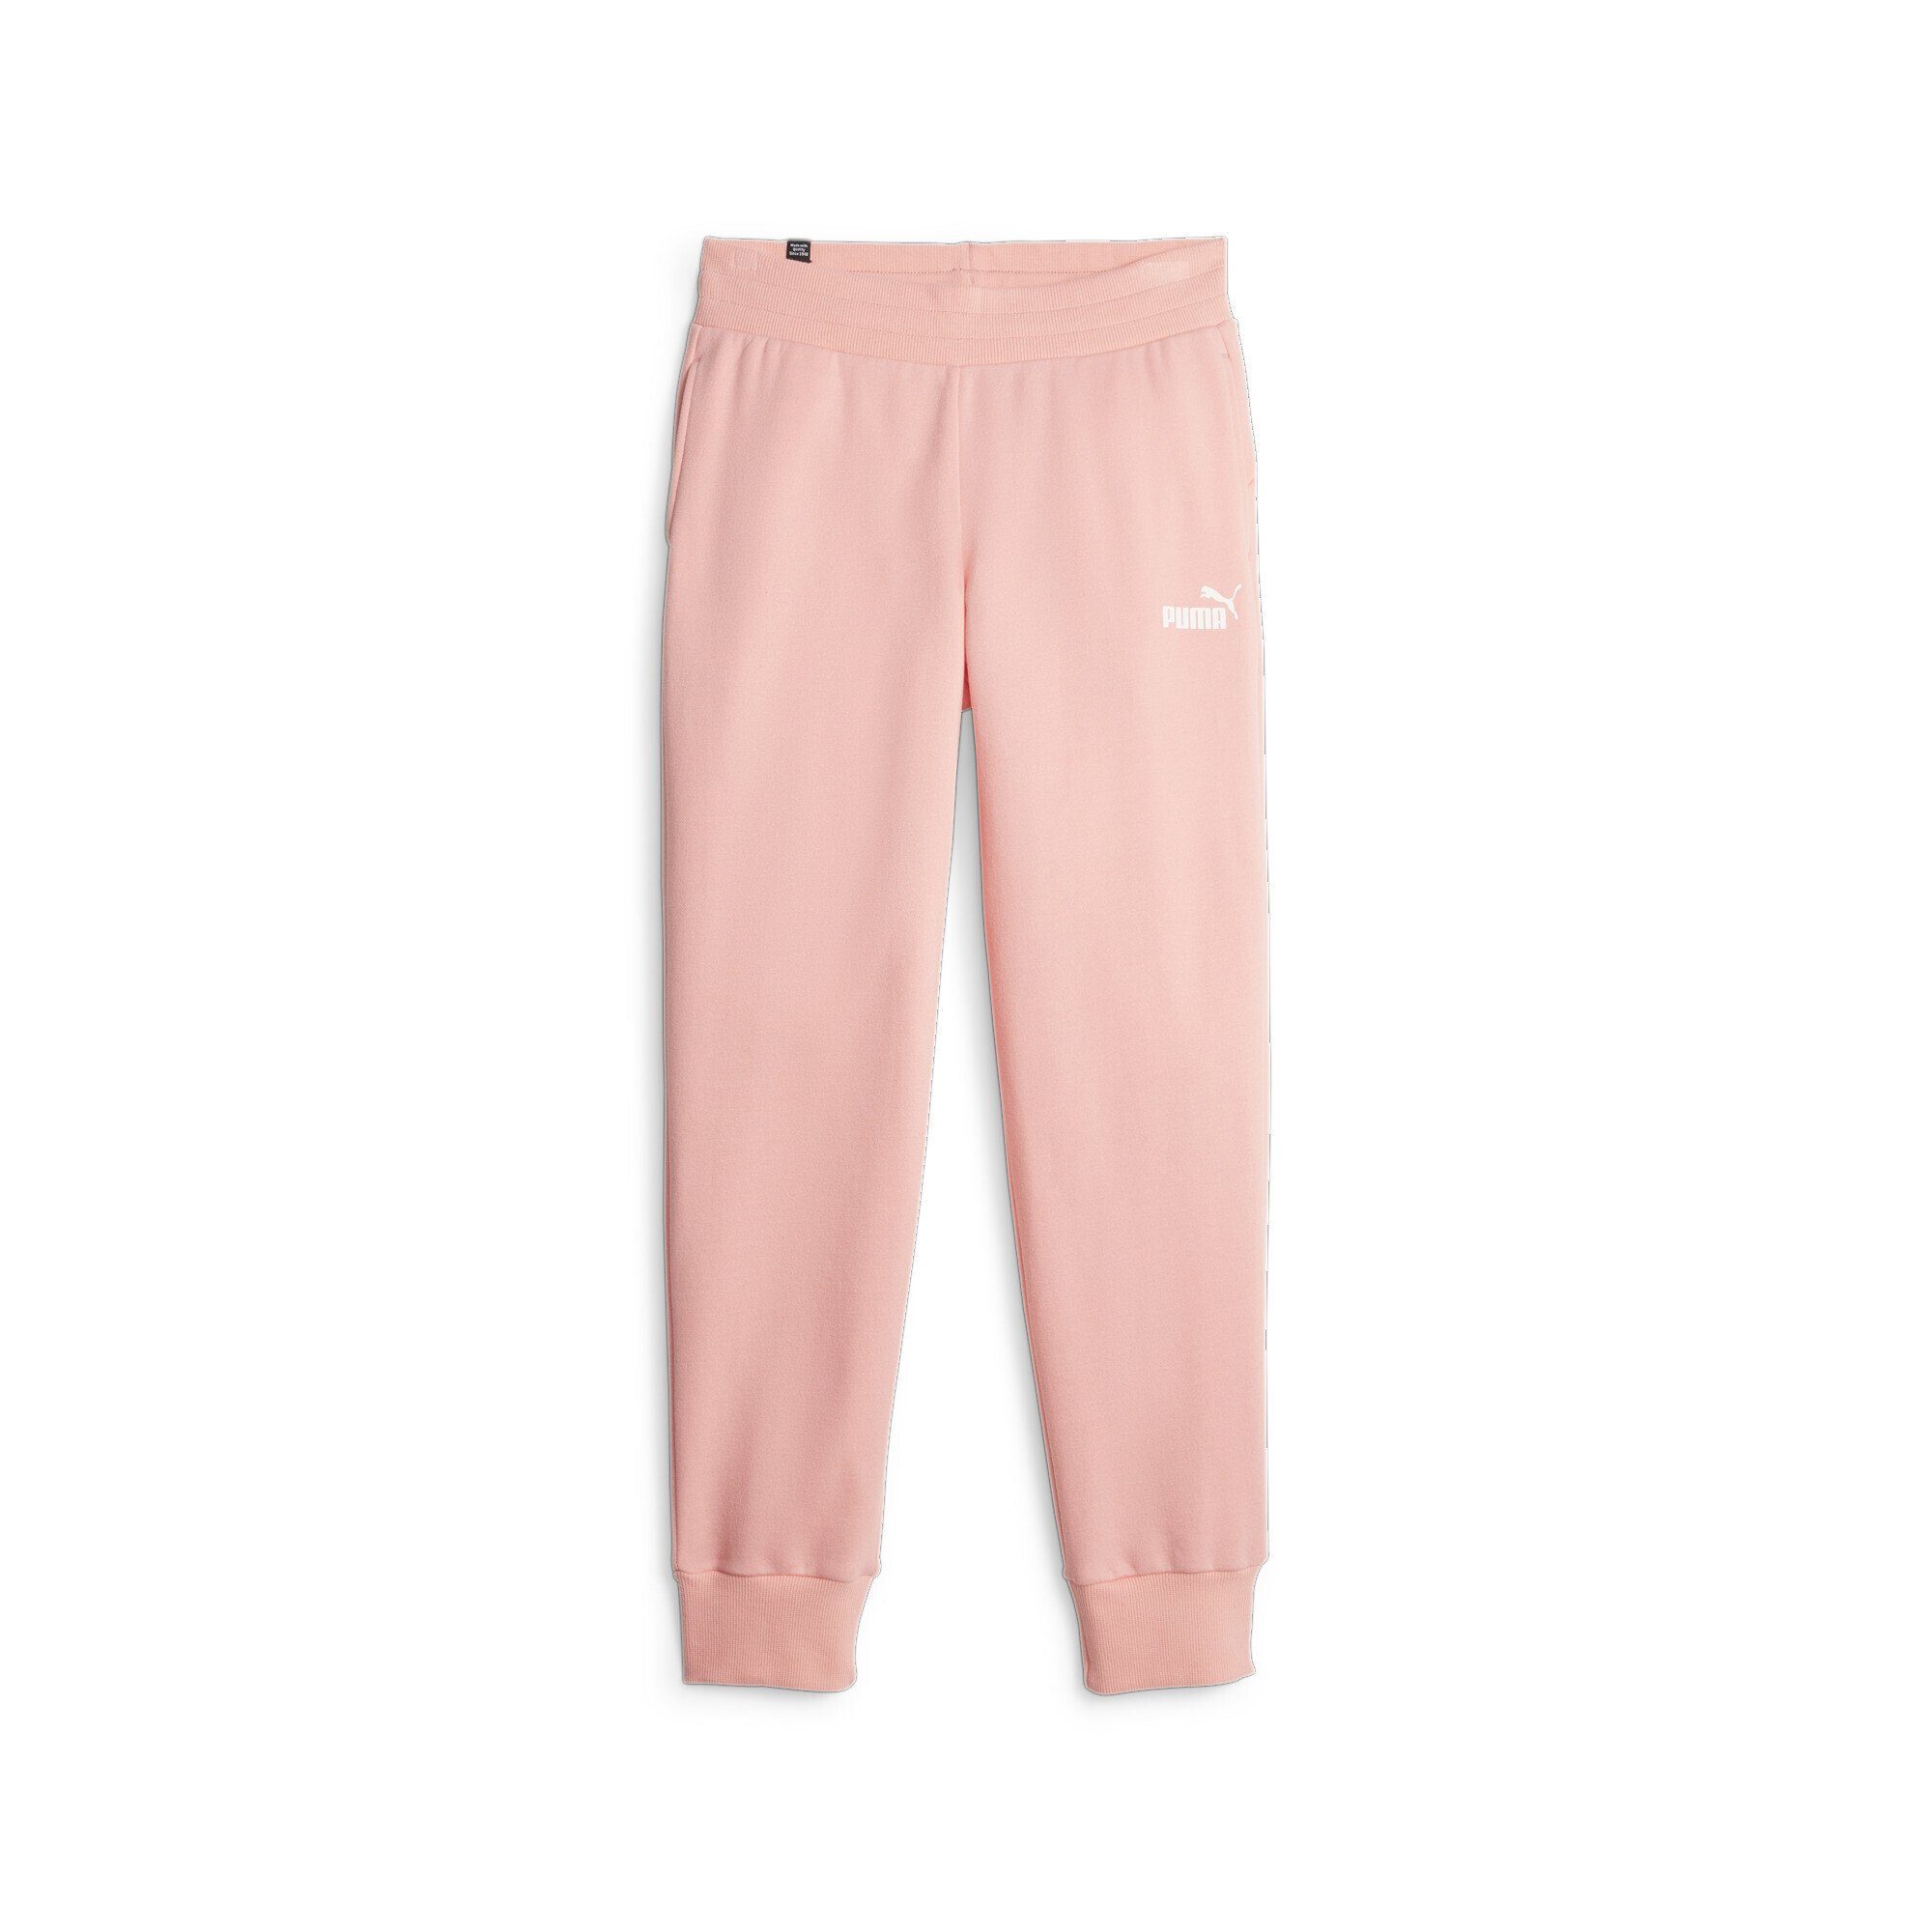 PUMA Sporthose Essentials Jogginghose Damen Peach Smoothie Pink